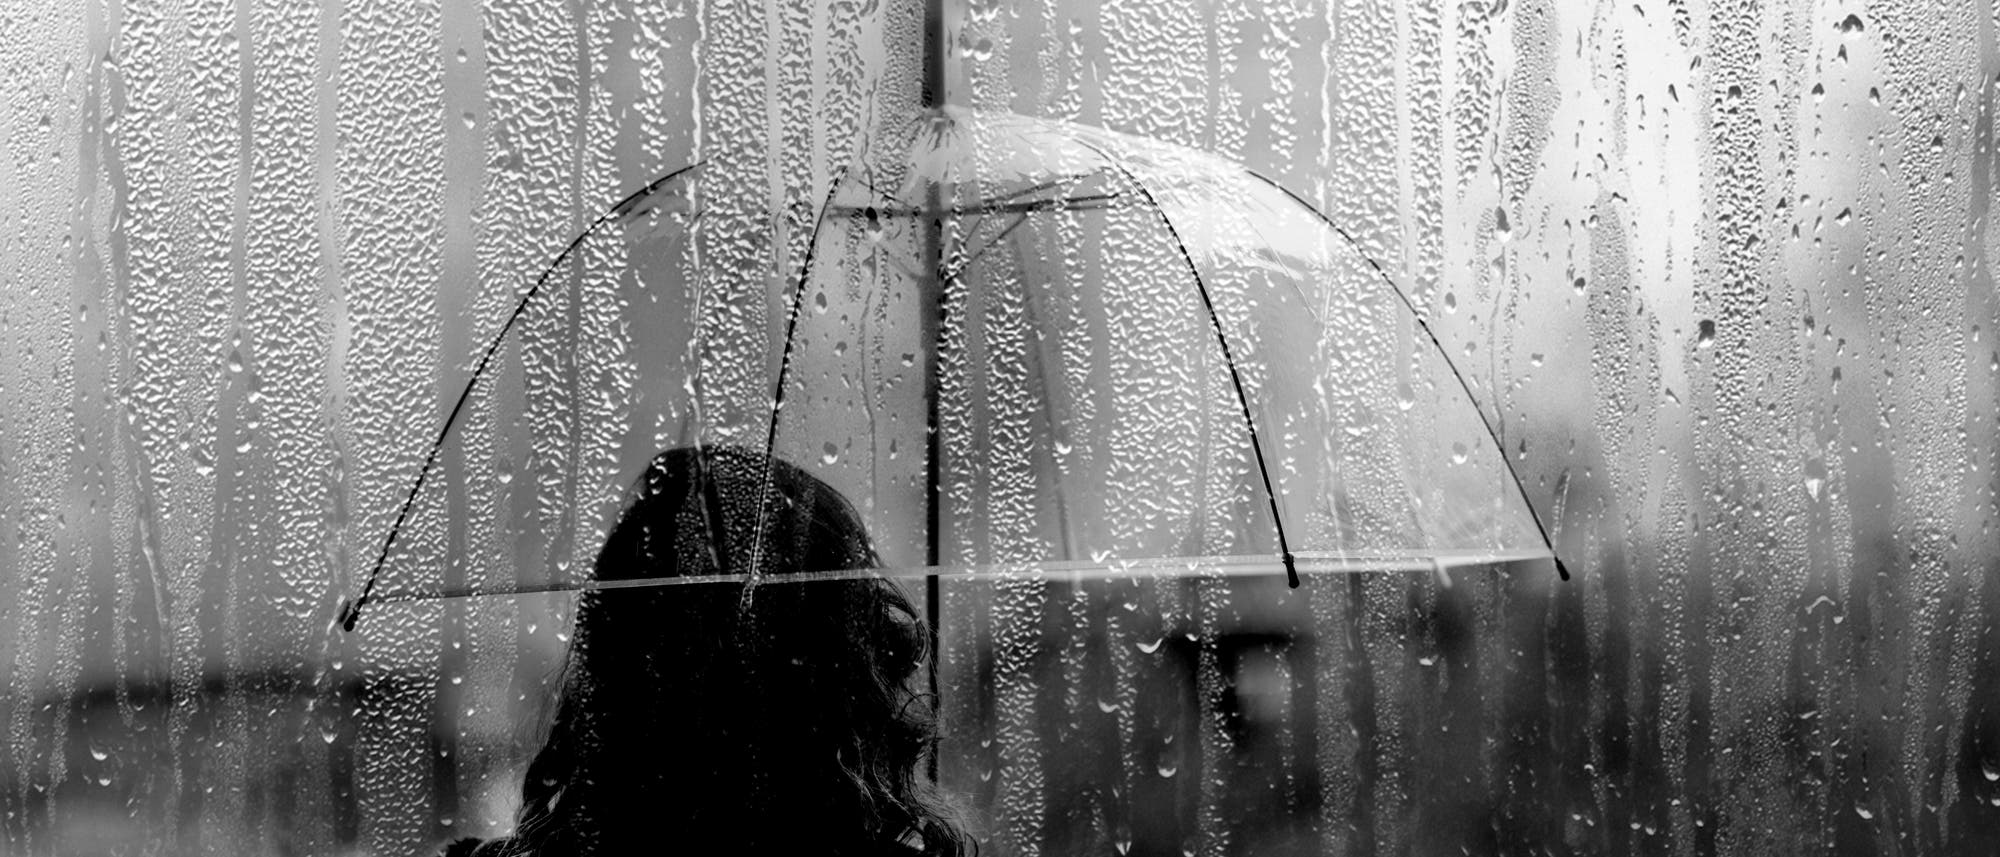 Schwarz-Weiß-Bild einer Frau, die mit einem durchsichtigen Regenschirm im Regen steht. Man sieht sie nur von hinten. 